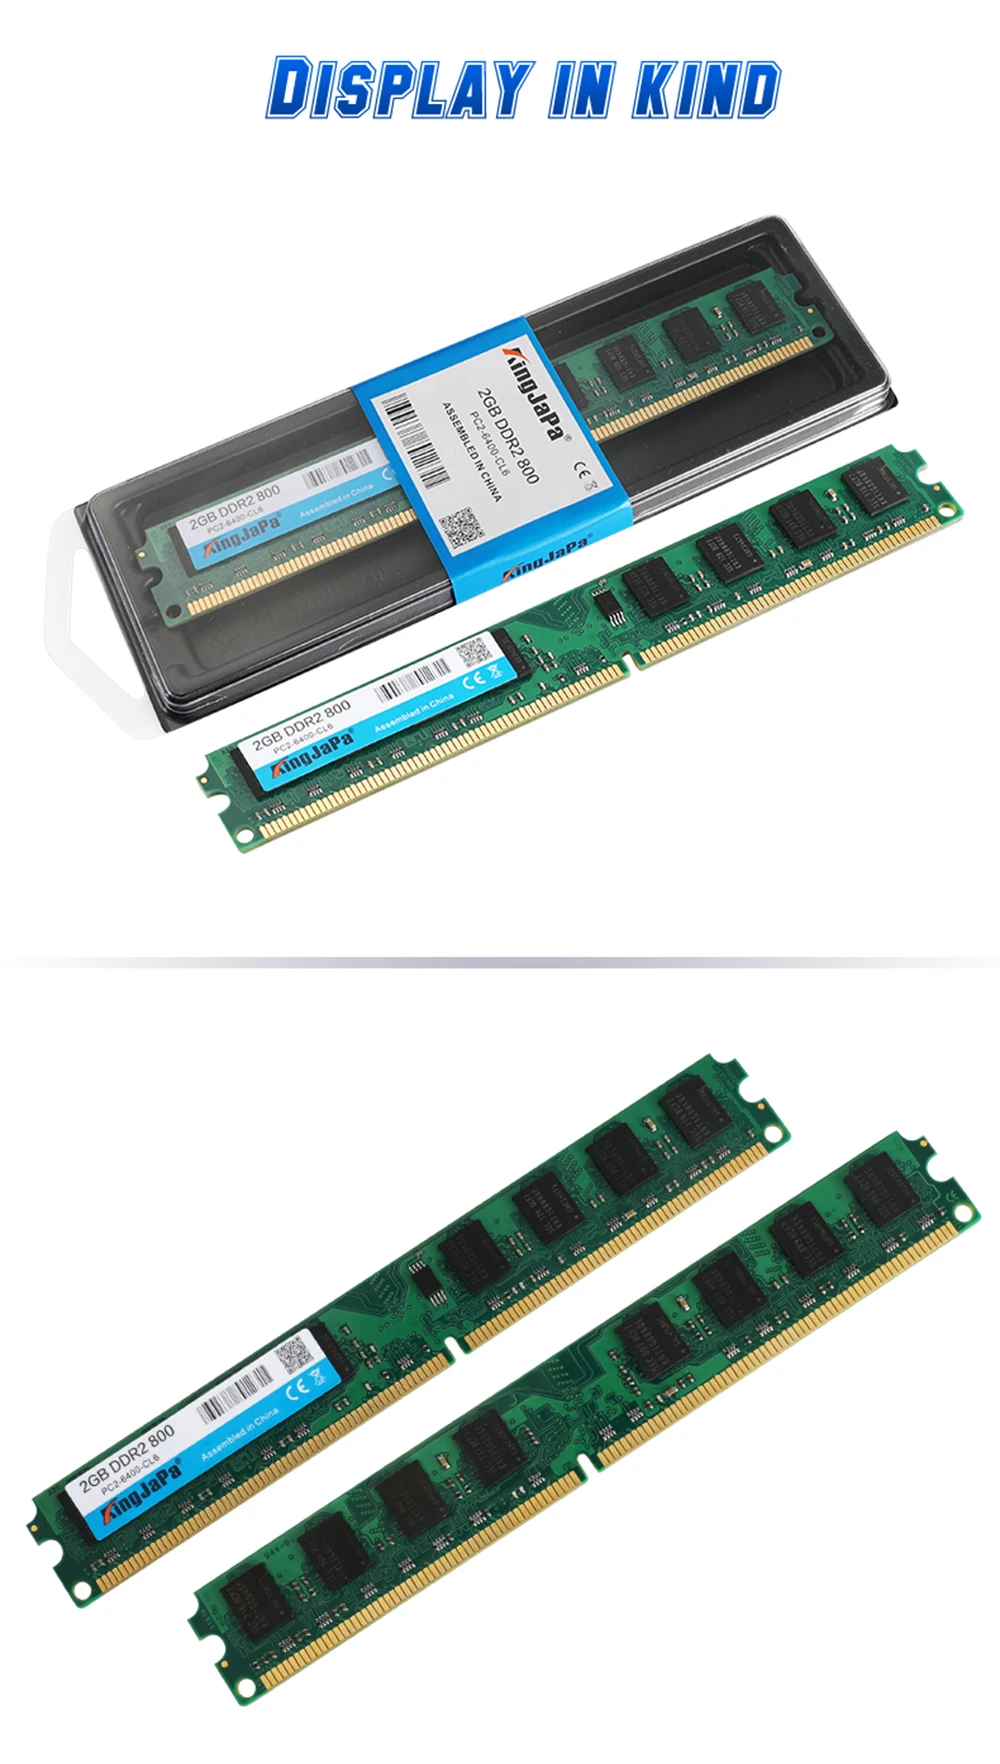 KingJaPa ноутбук с оперативной памятью в DDR2 800 800 МГц 667 533 МГц 2 ГБ 1 ГБ для Тетрадь SODIMM Мемория Совместимость с DDR 2 2 Гб SO-DIMM